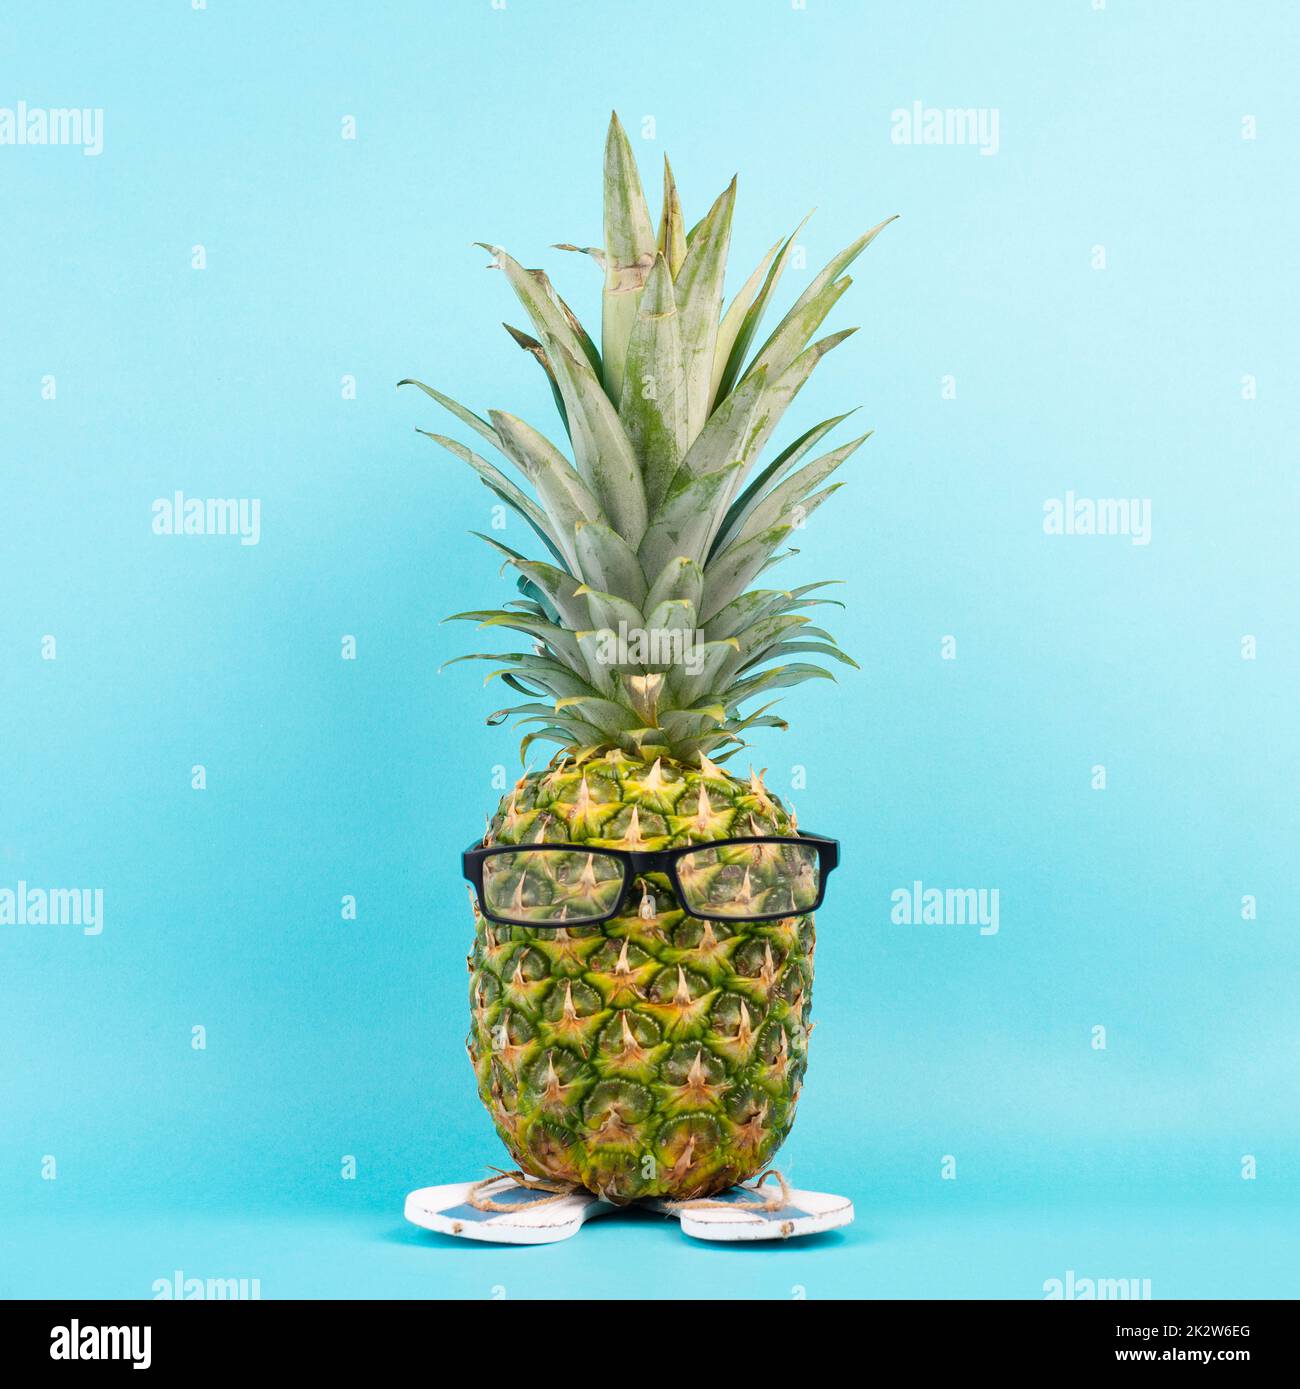 Ananas avec verres et tongs, concept de vacances et de voyage, vacances tropicales d'été, fruits drôles, fond bleu Banque D'Images